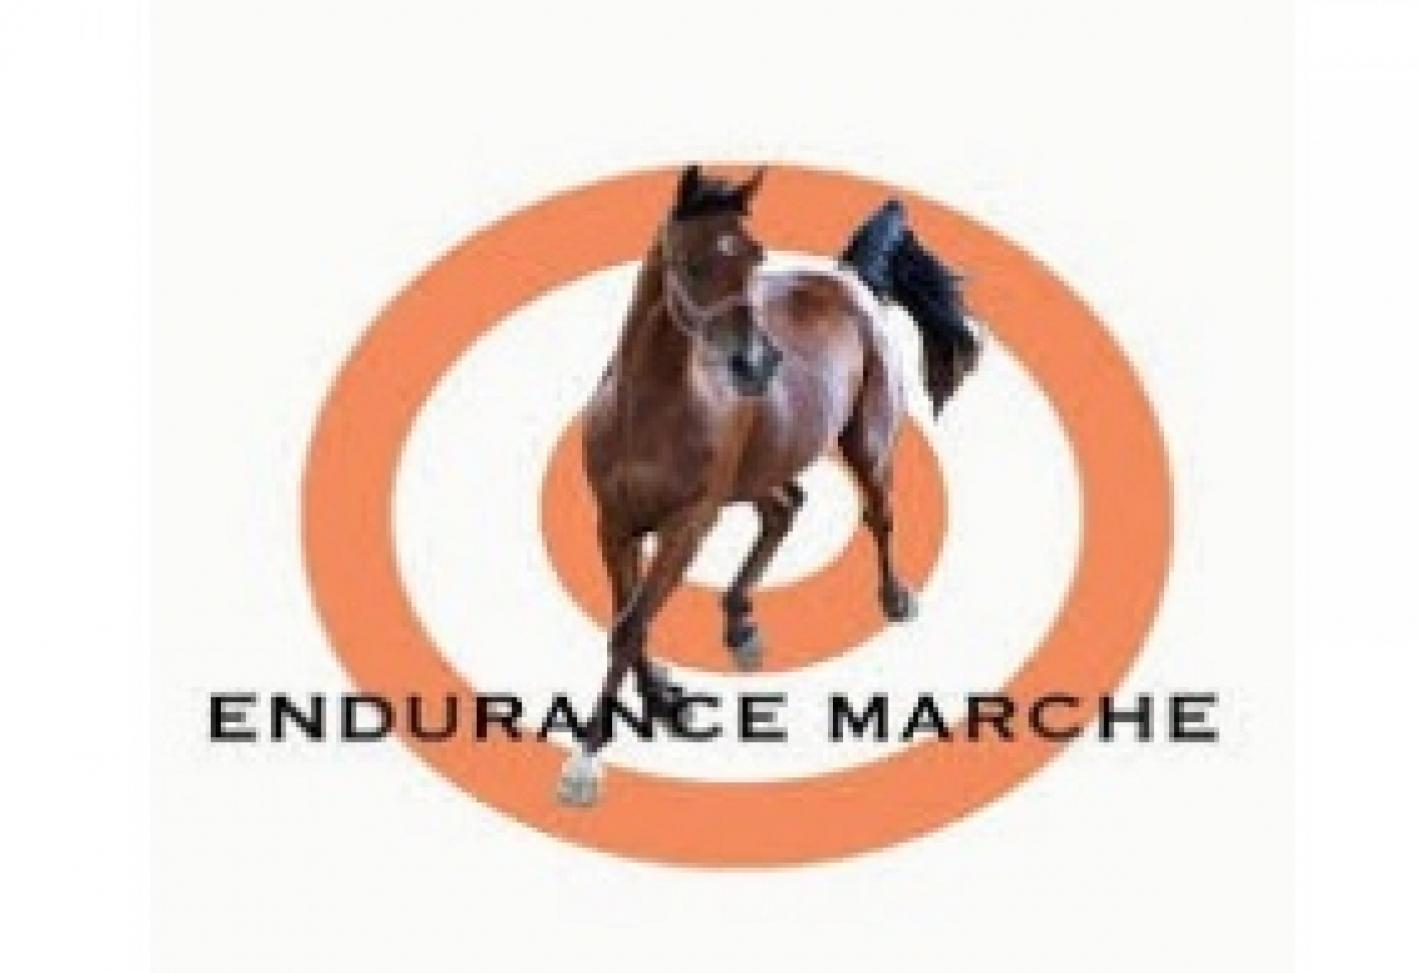 images/marche/Endurance/large/medium/Endurance_Marche.jpeg